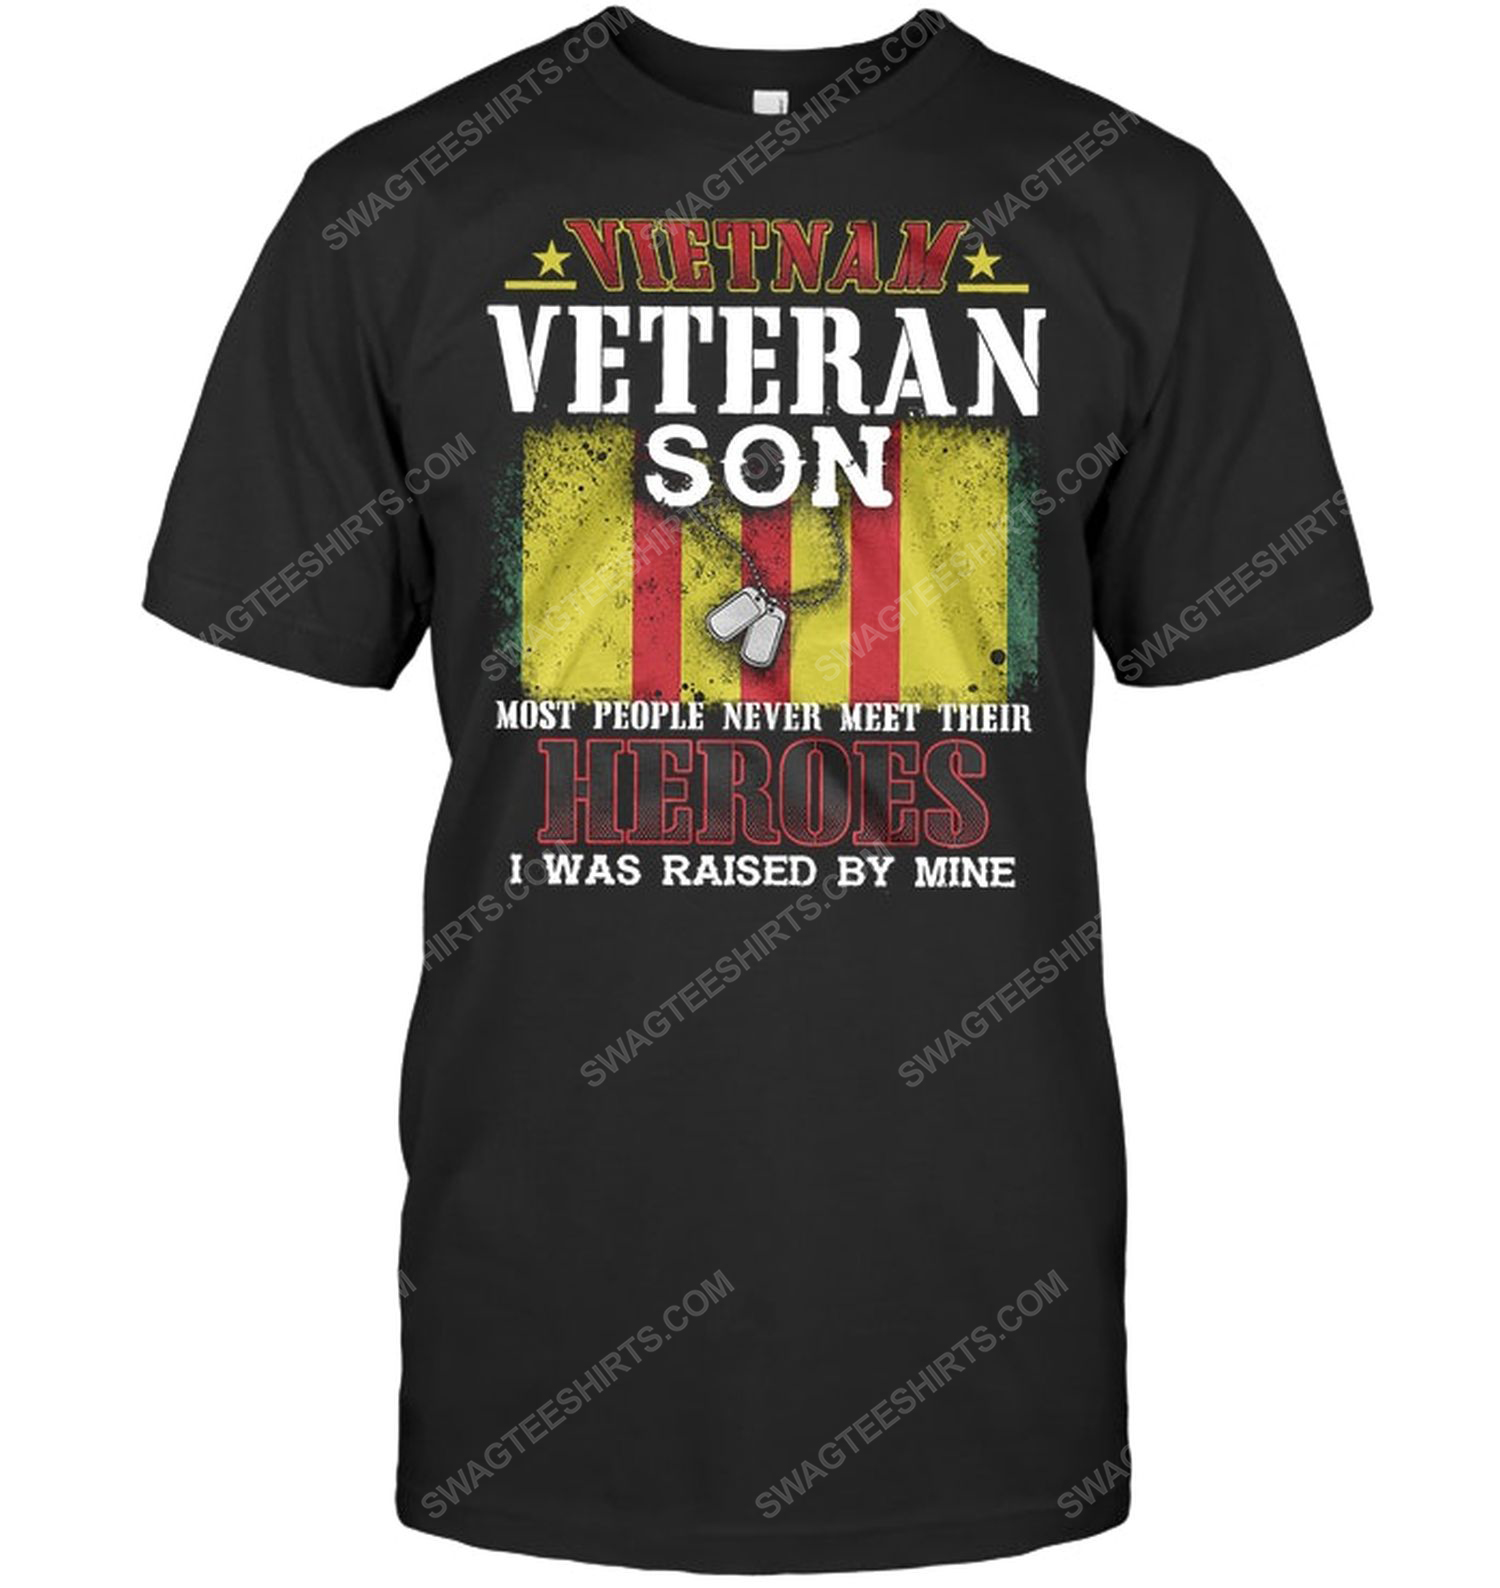 Vietnam veteran son most people never meet their heroes i was raised by mine tshirt